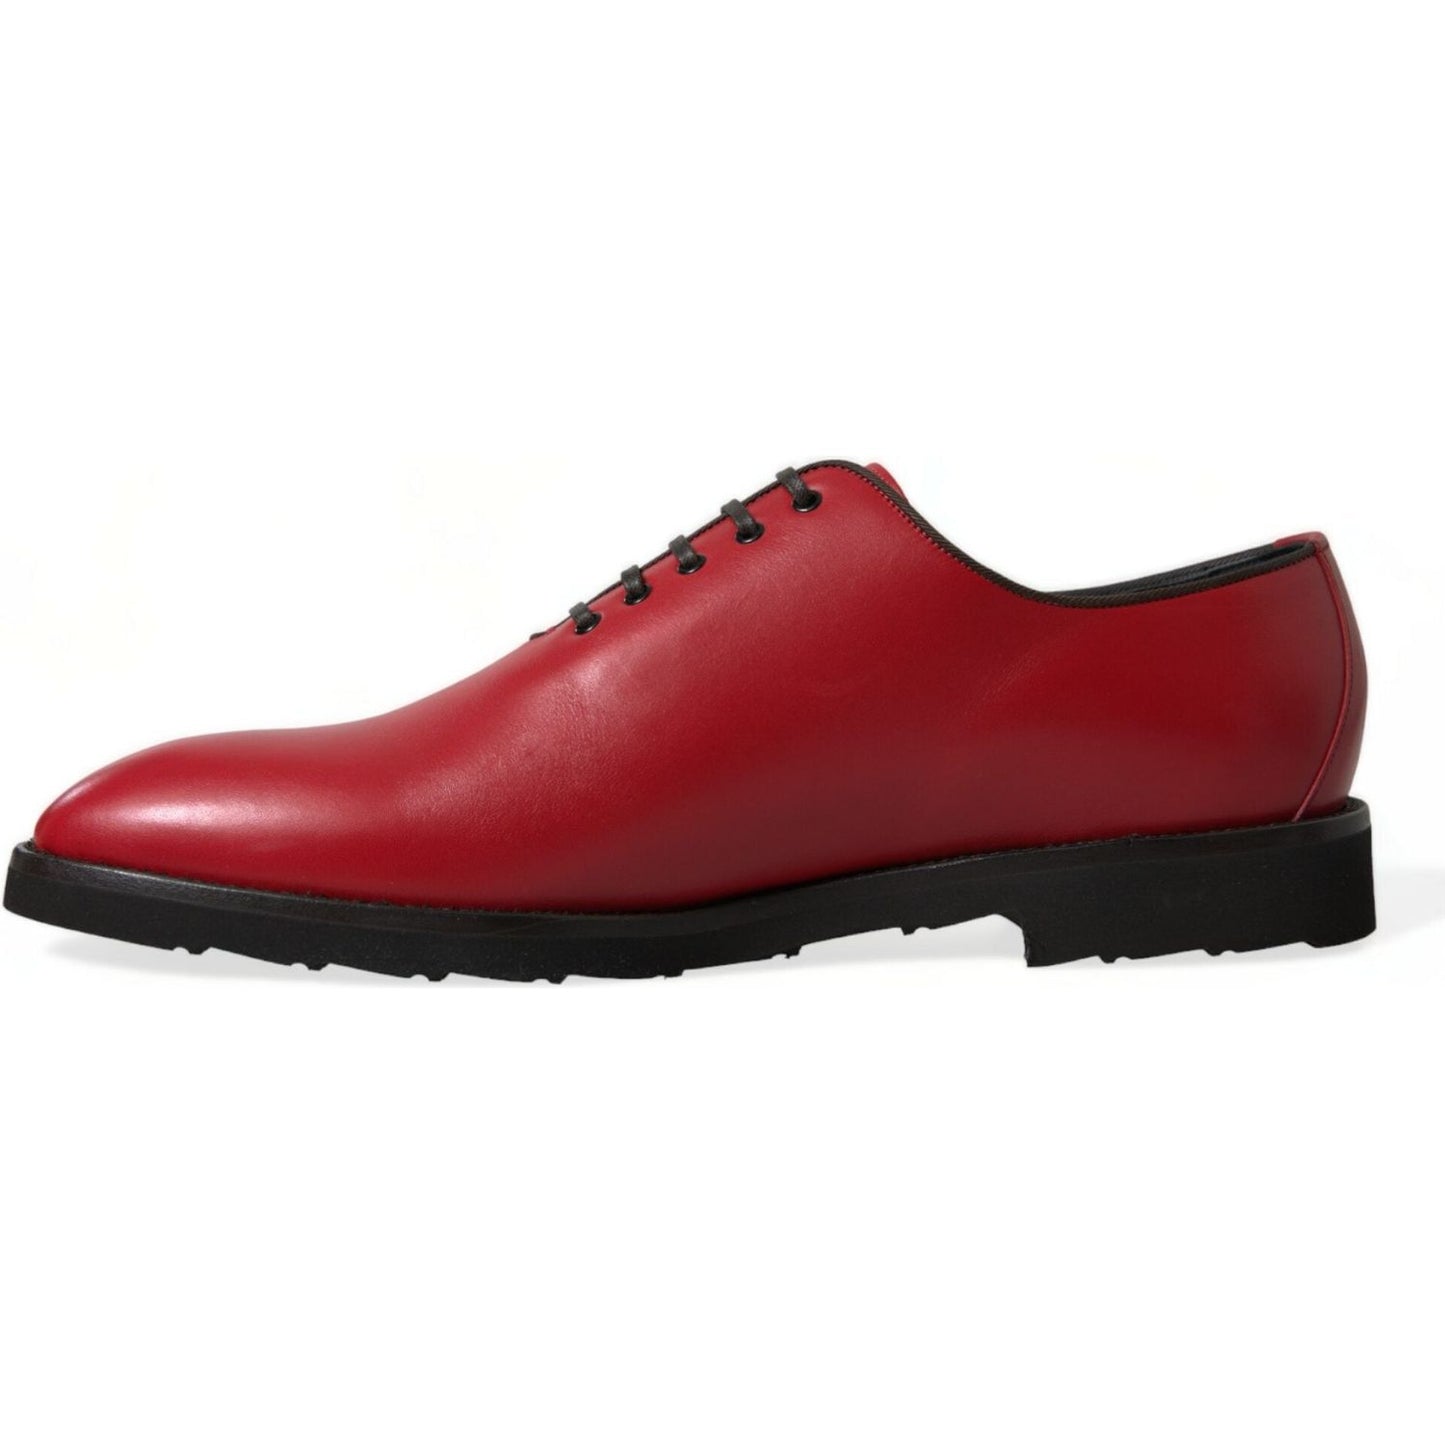 Dolce & Gabbana | Elegant Red Leather Oxford Dress Shoes| McRichard Designer Brands   